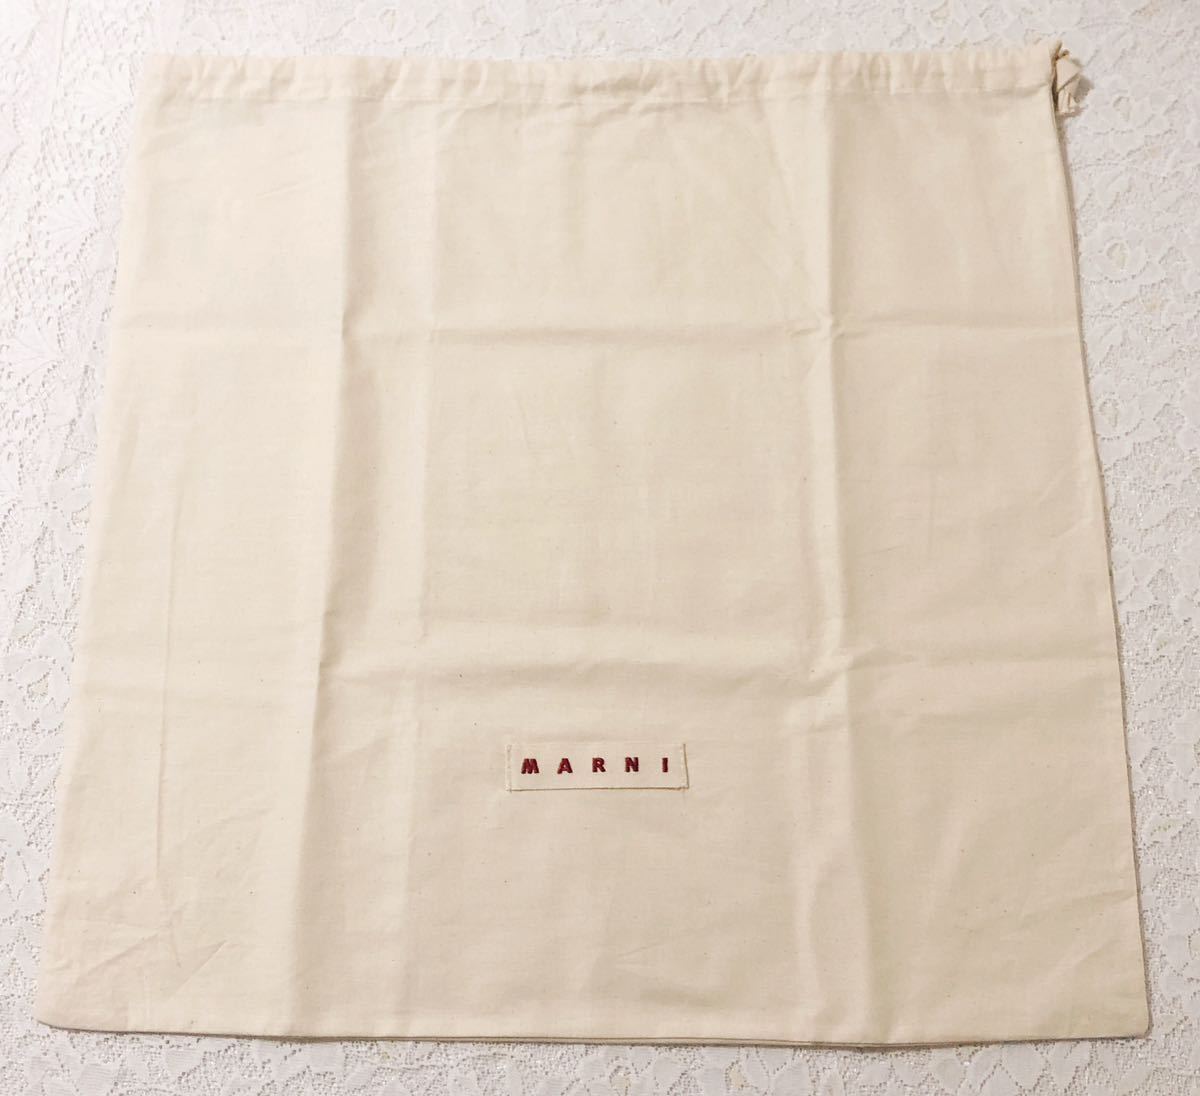 マルニ「MARNI」バッグ保存袋 (3622) 正規品 付属品 内袋 布袋 巾着袋 布製 ベージュ49×49cm バッグ用 の画像1